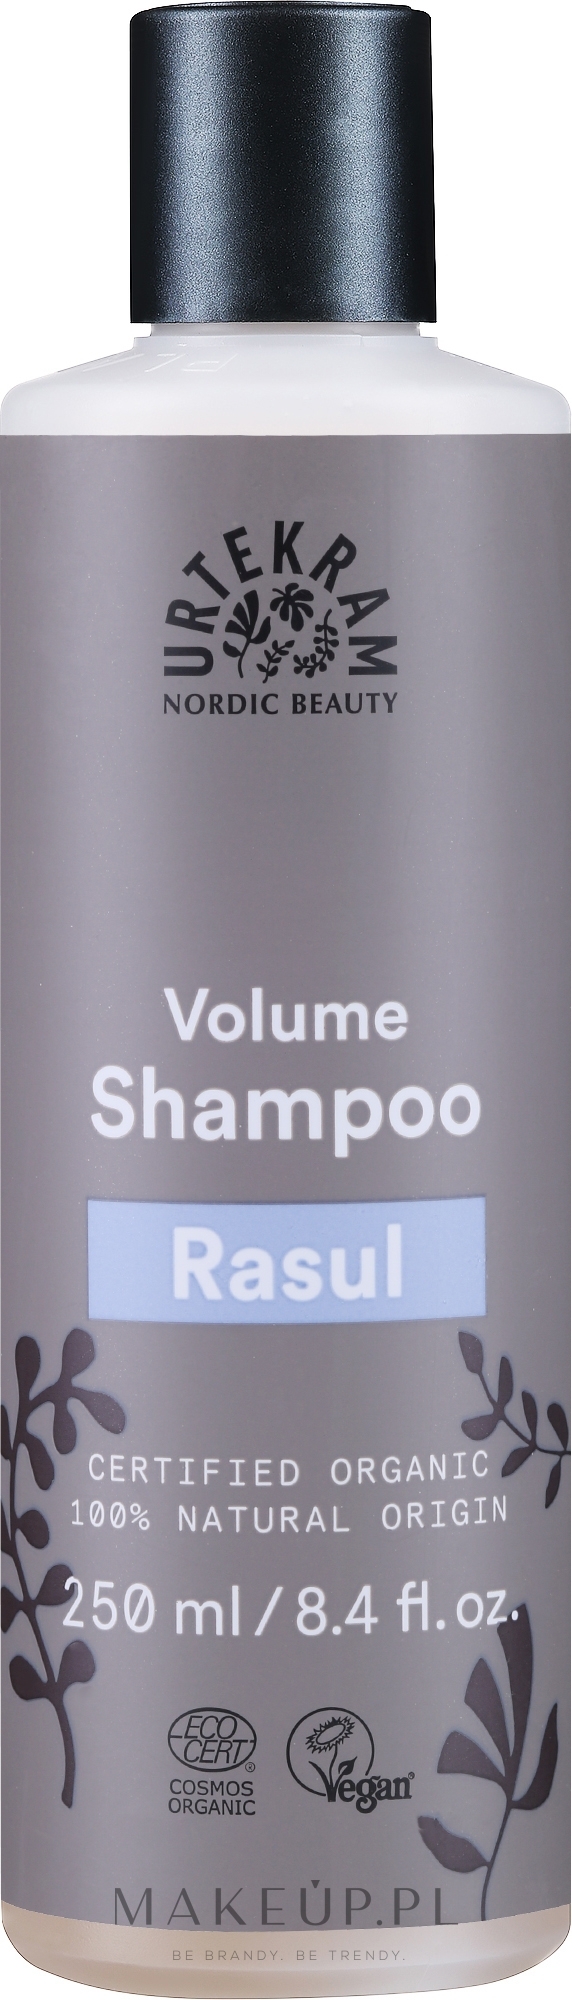 urtekram szampon z glinką marokańską rhassoul